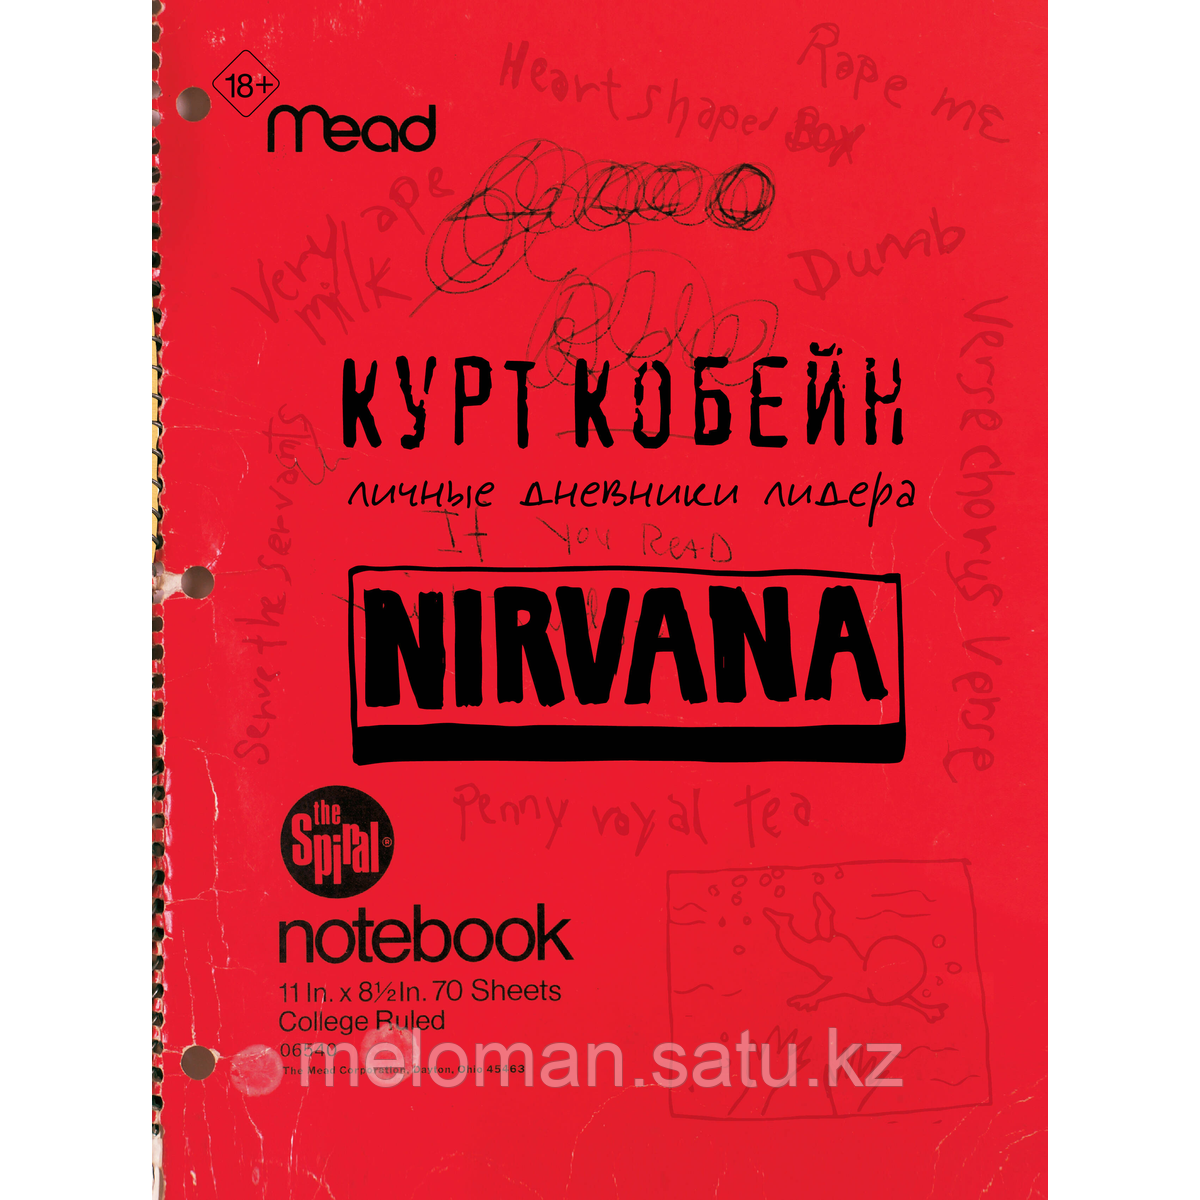 Кобейн К.: Курт Кобейн. Личные дневники лидера Nirvana